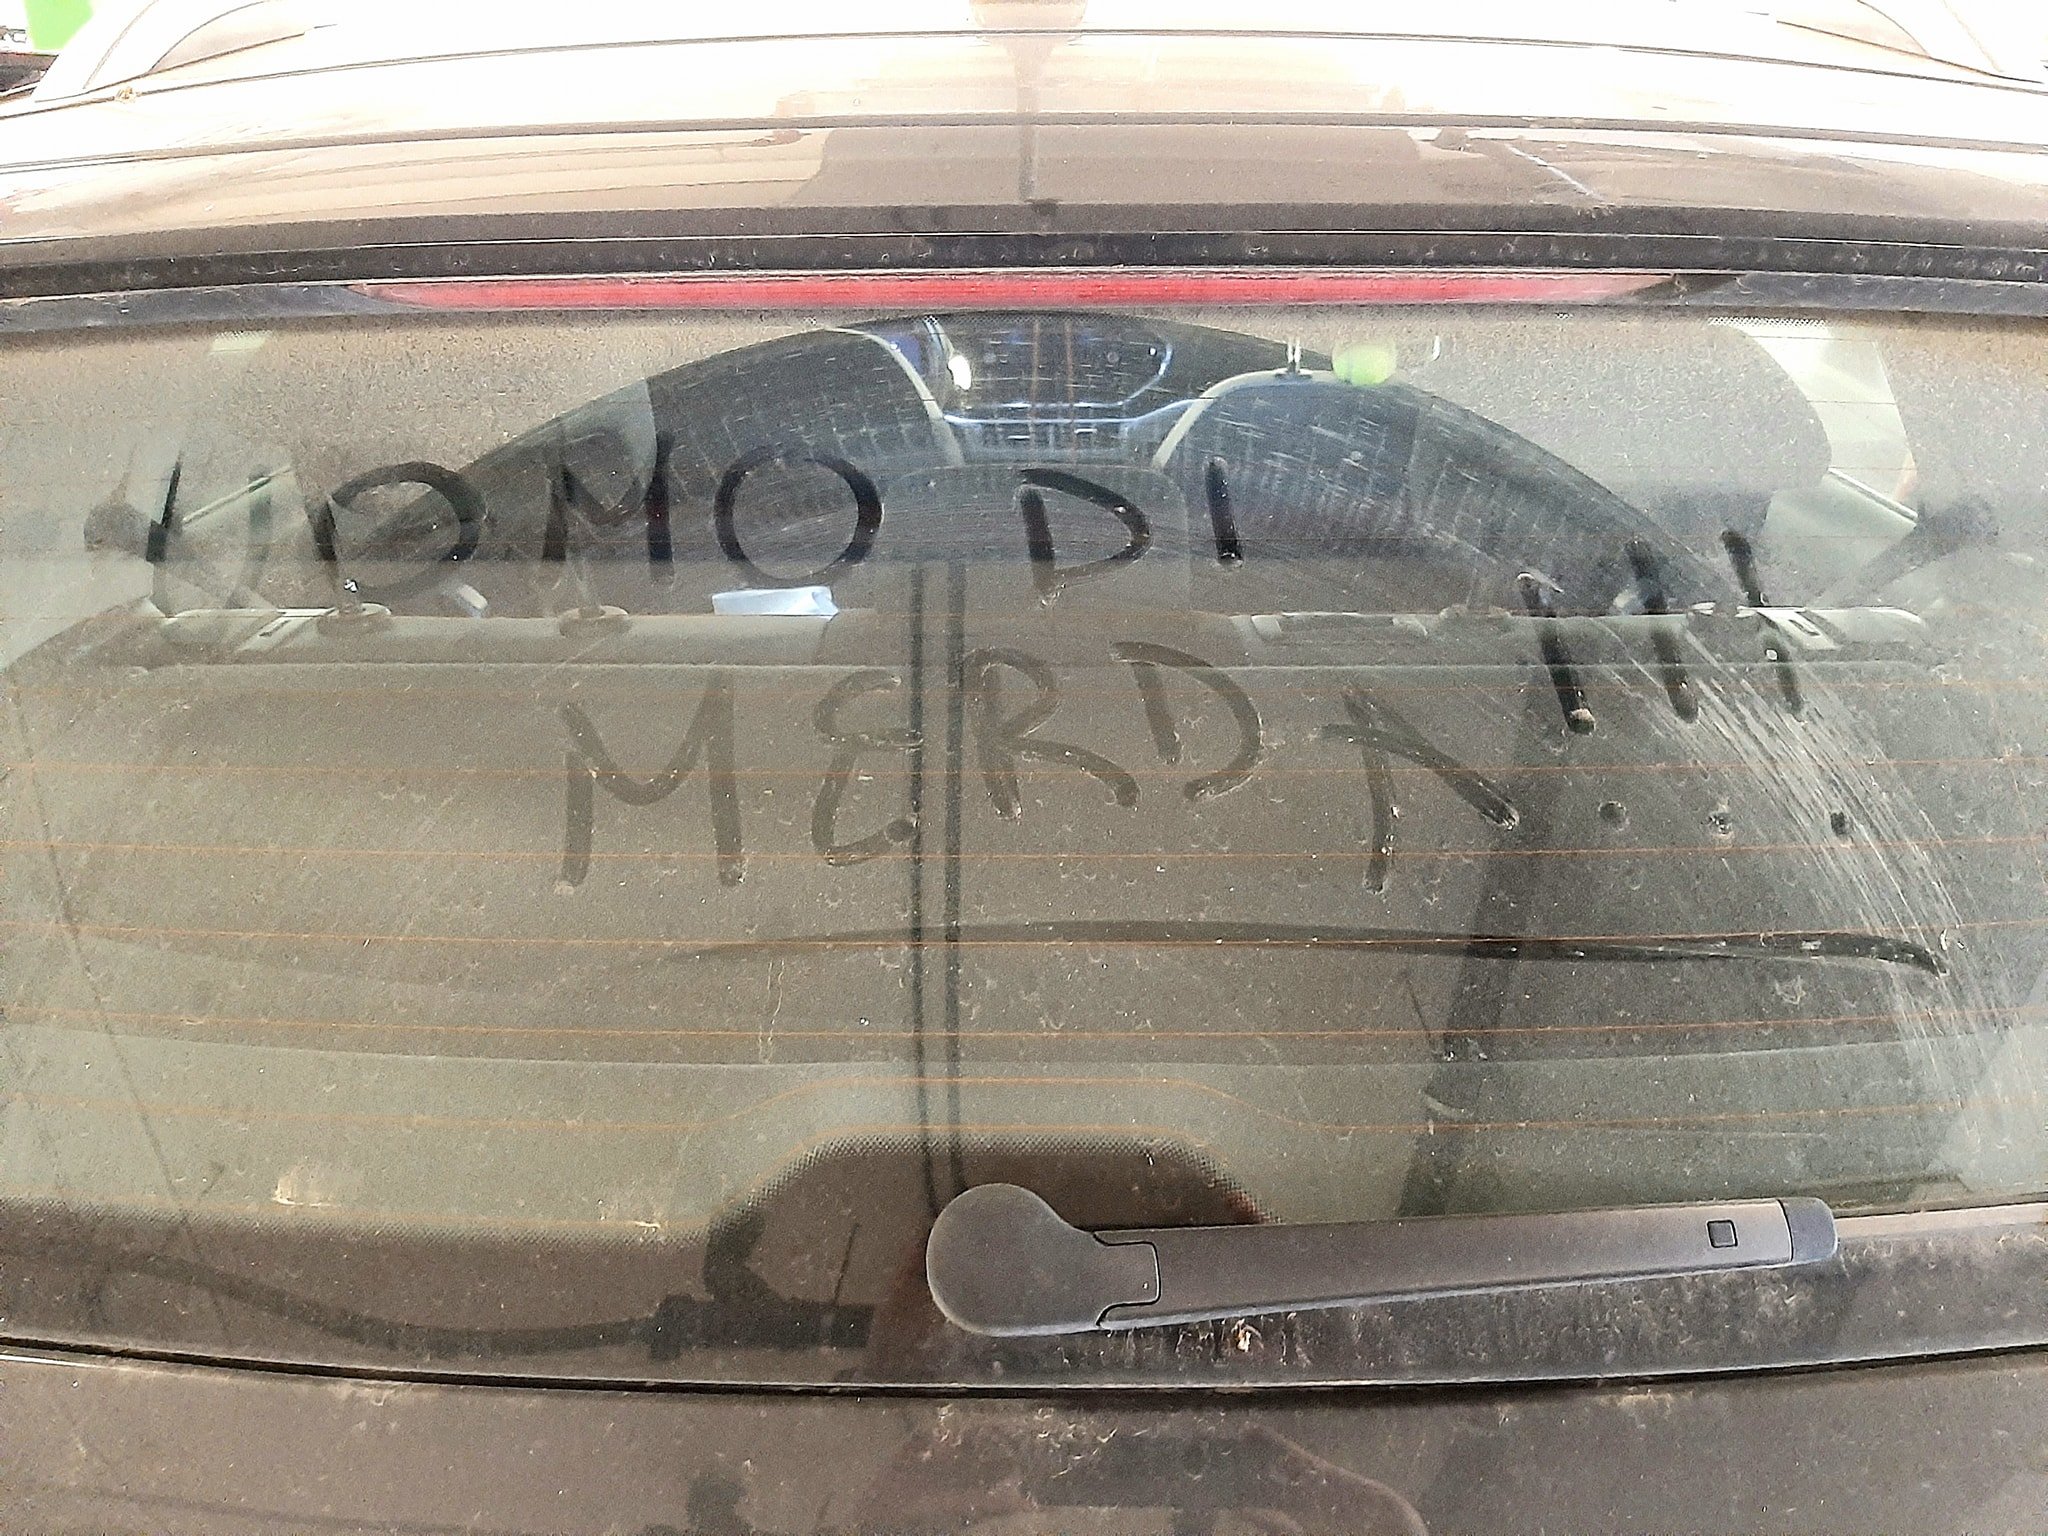 Domenico Ravetti insultato con una scritta sulla sua macchina: “Uomo di m…”